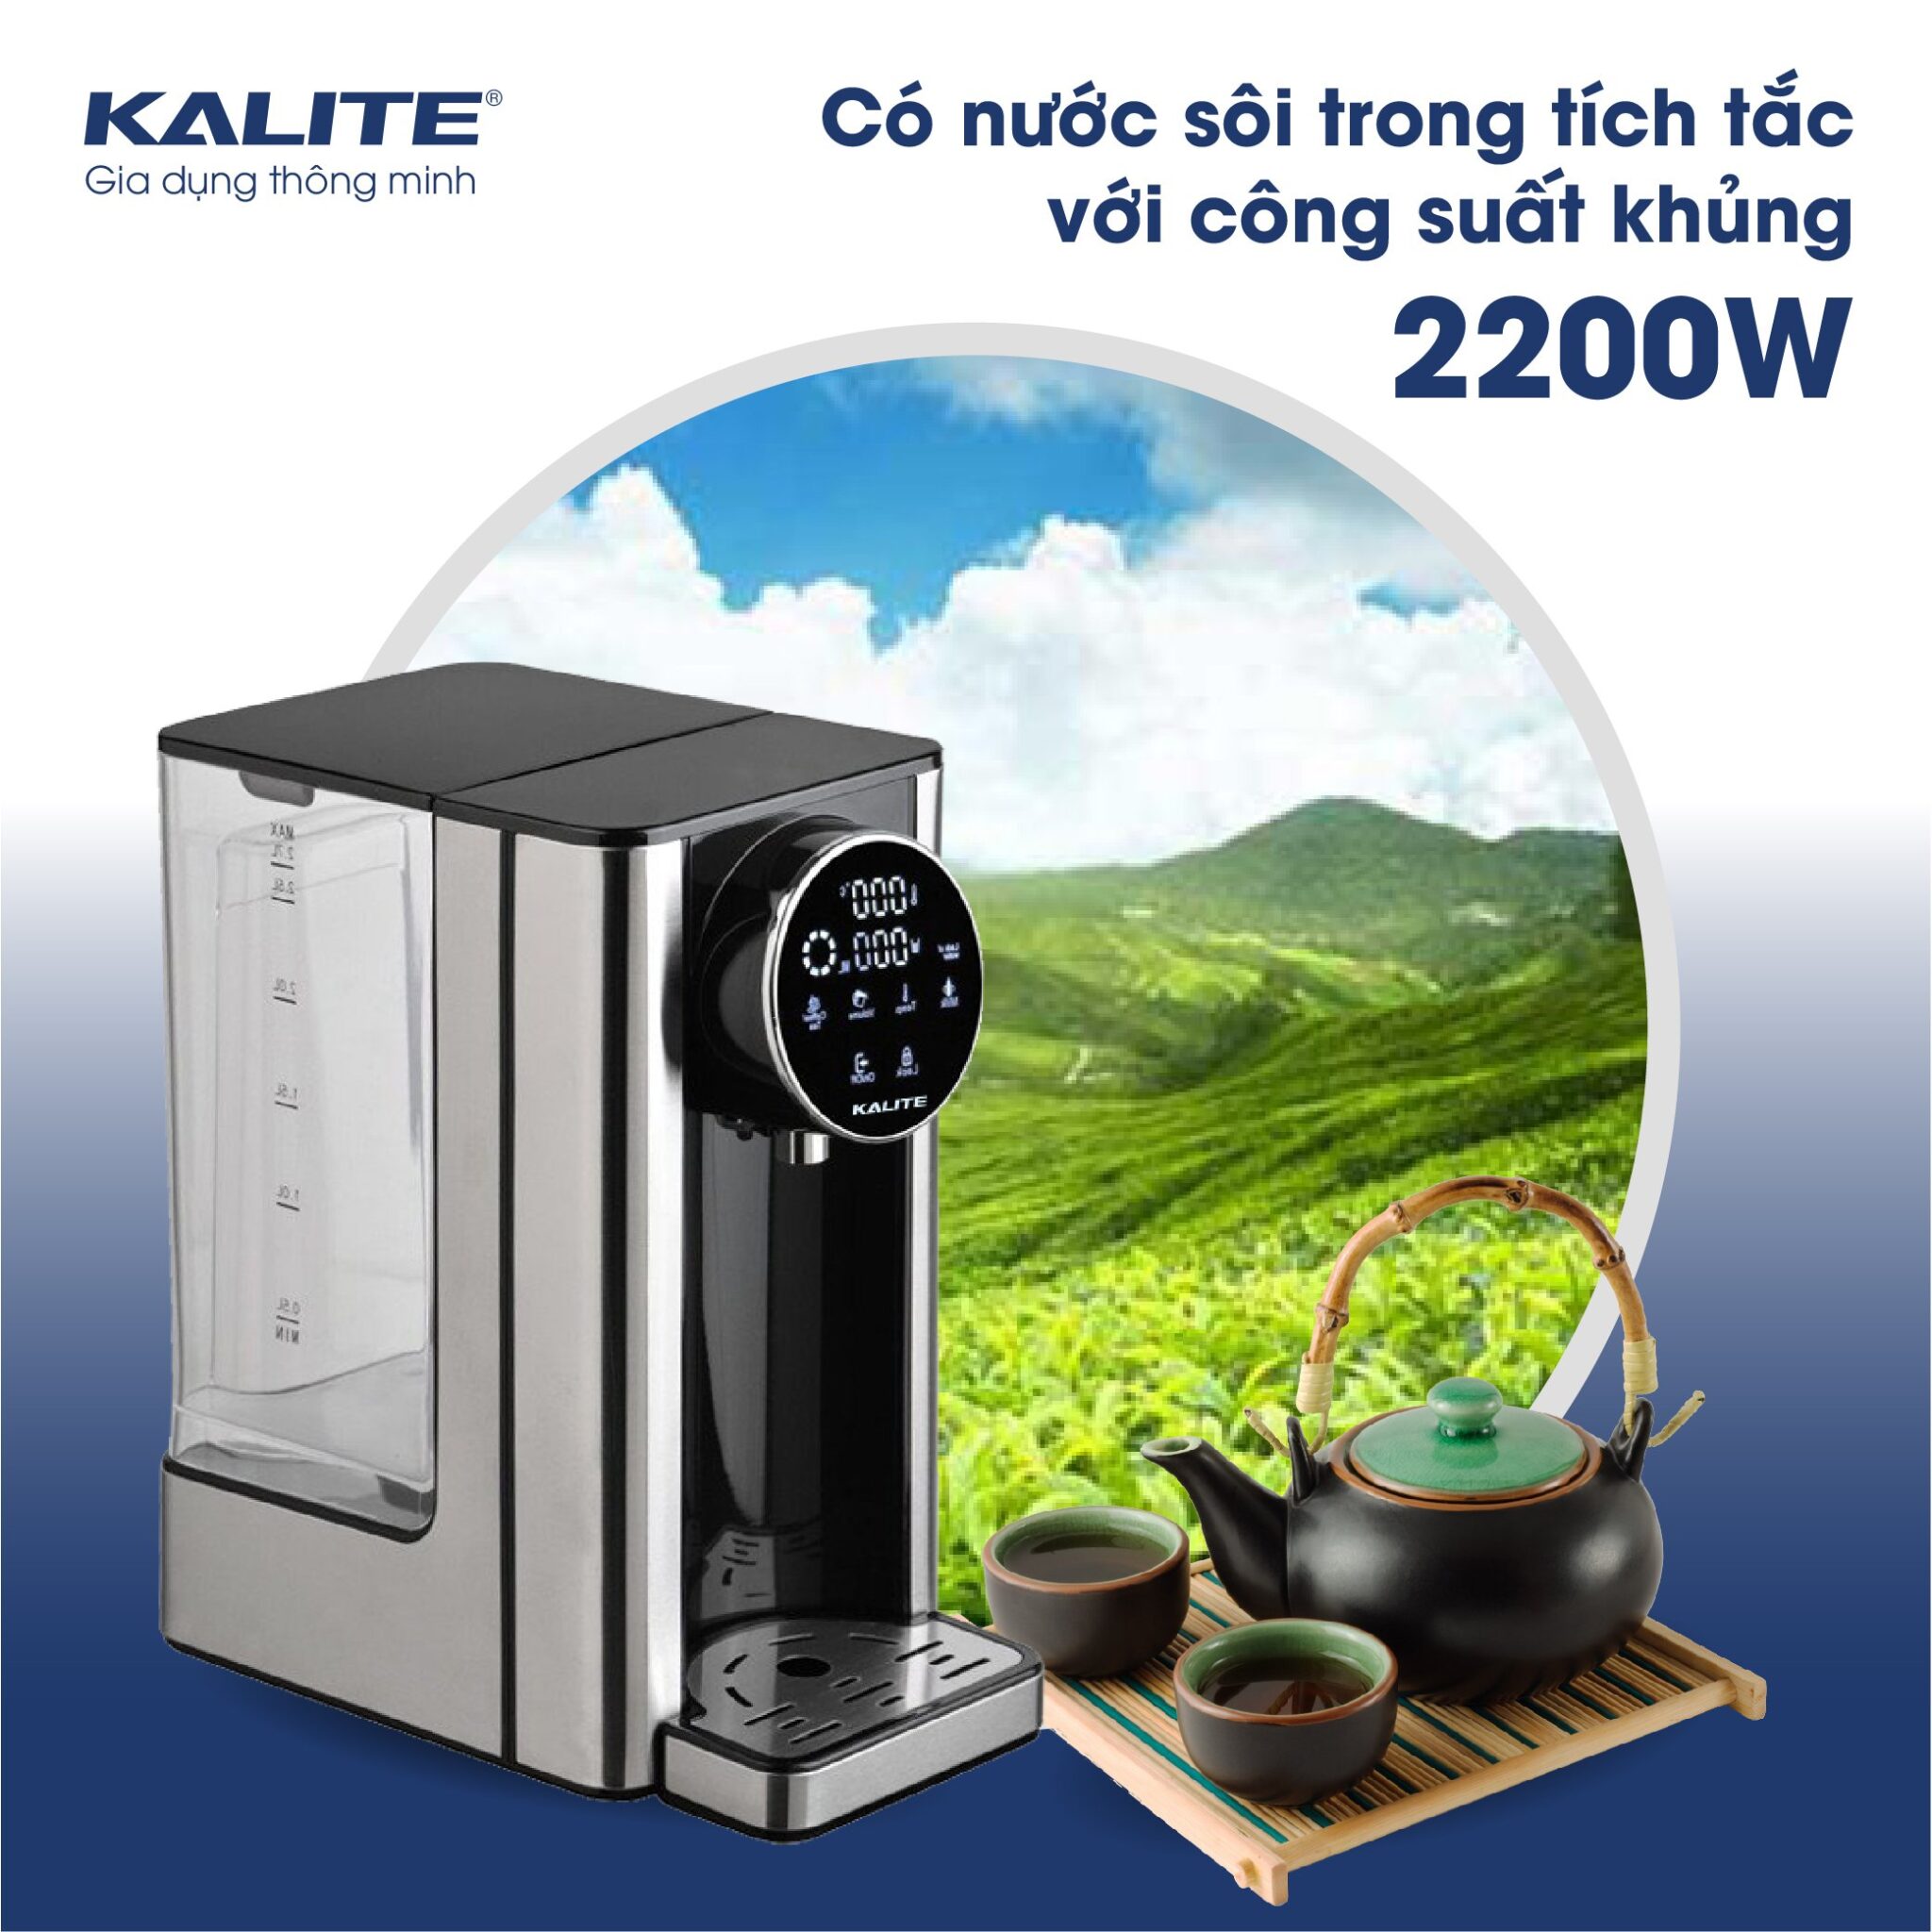 Bình thủy điện Kalite KL-888 dung tích 2.7 Lít